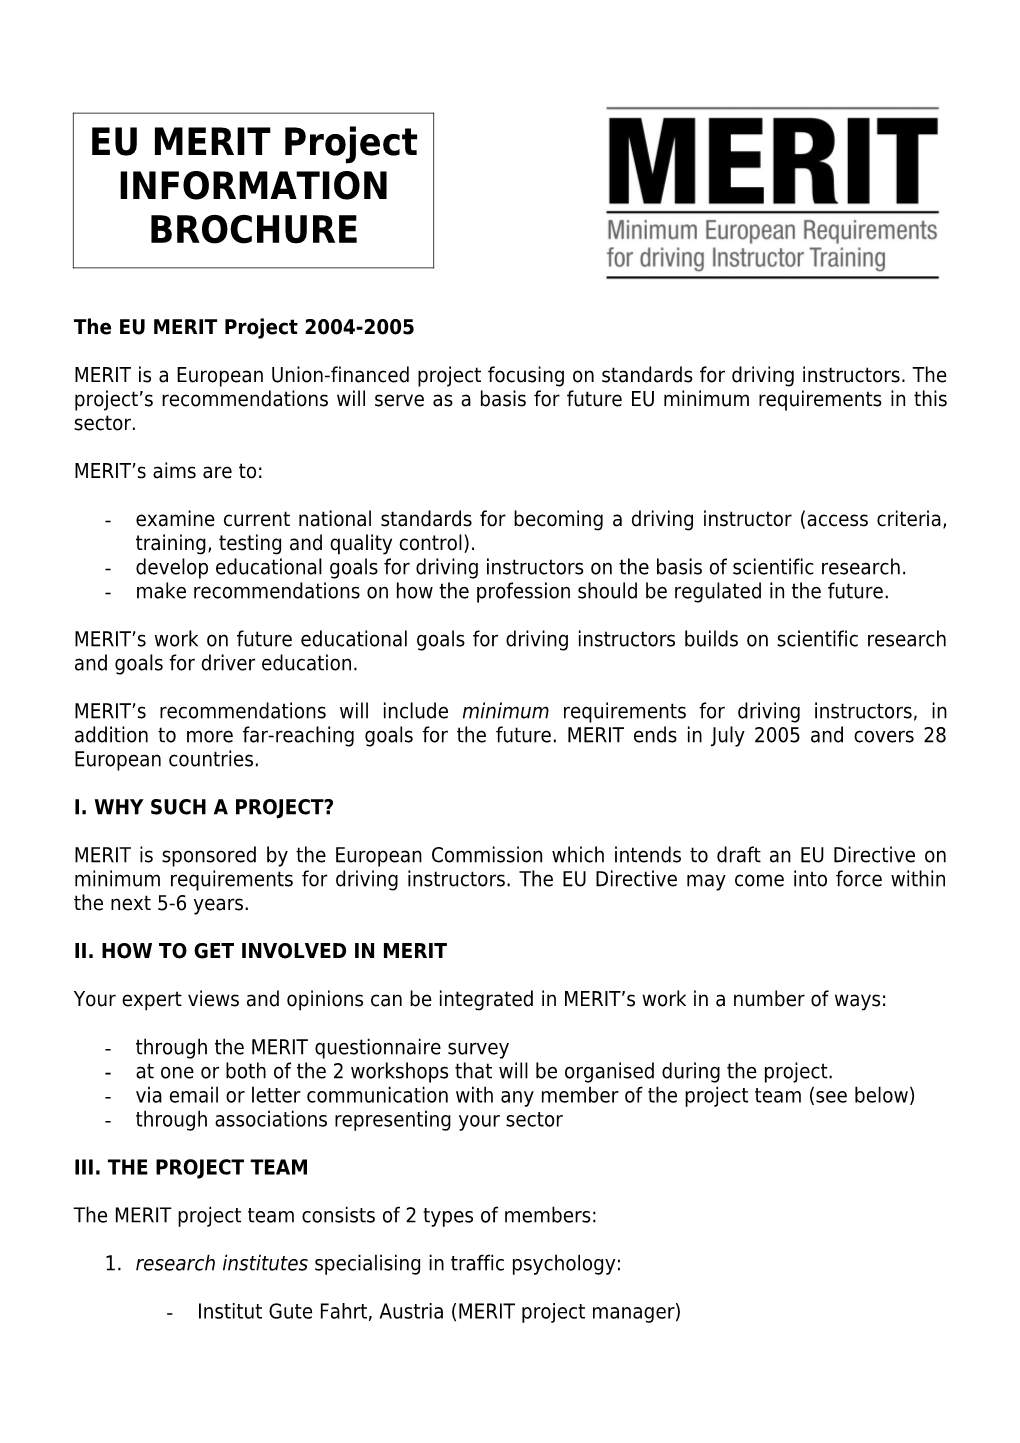 The EU MERIT Project 2004-2005